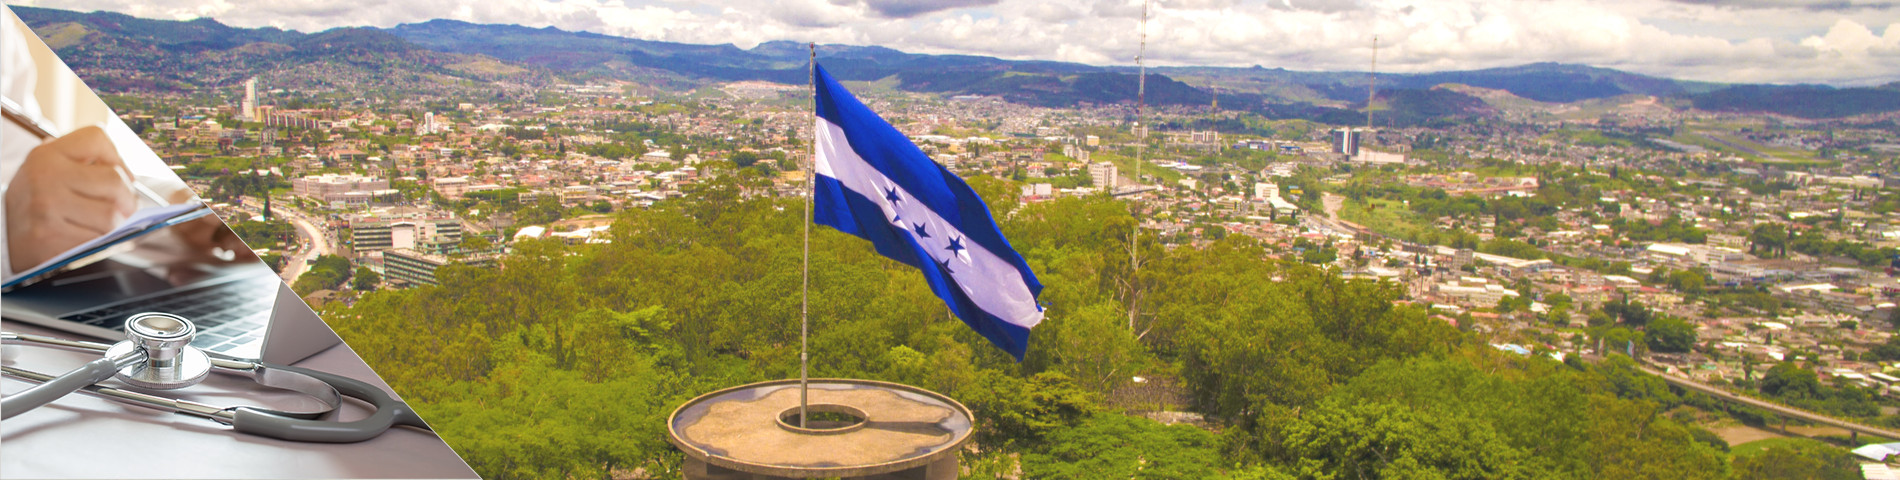 Гондурас - Испанский для Докторов и Медсестер